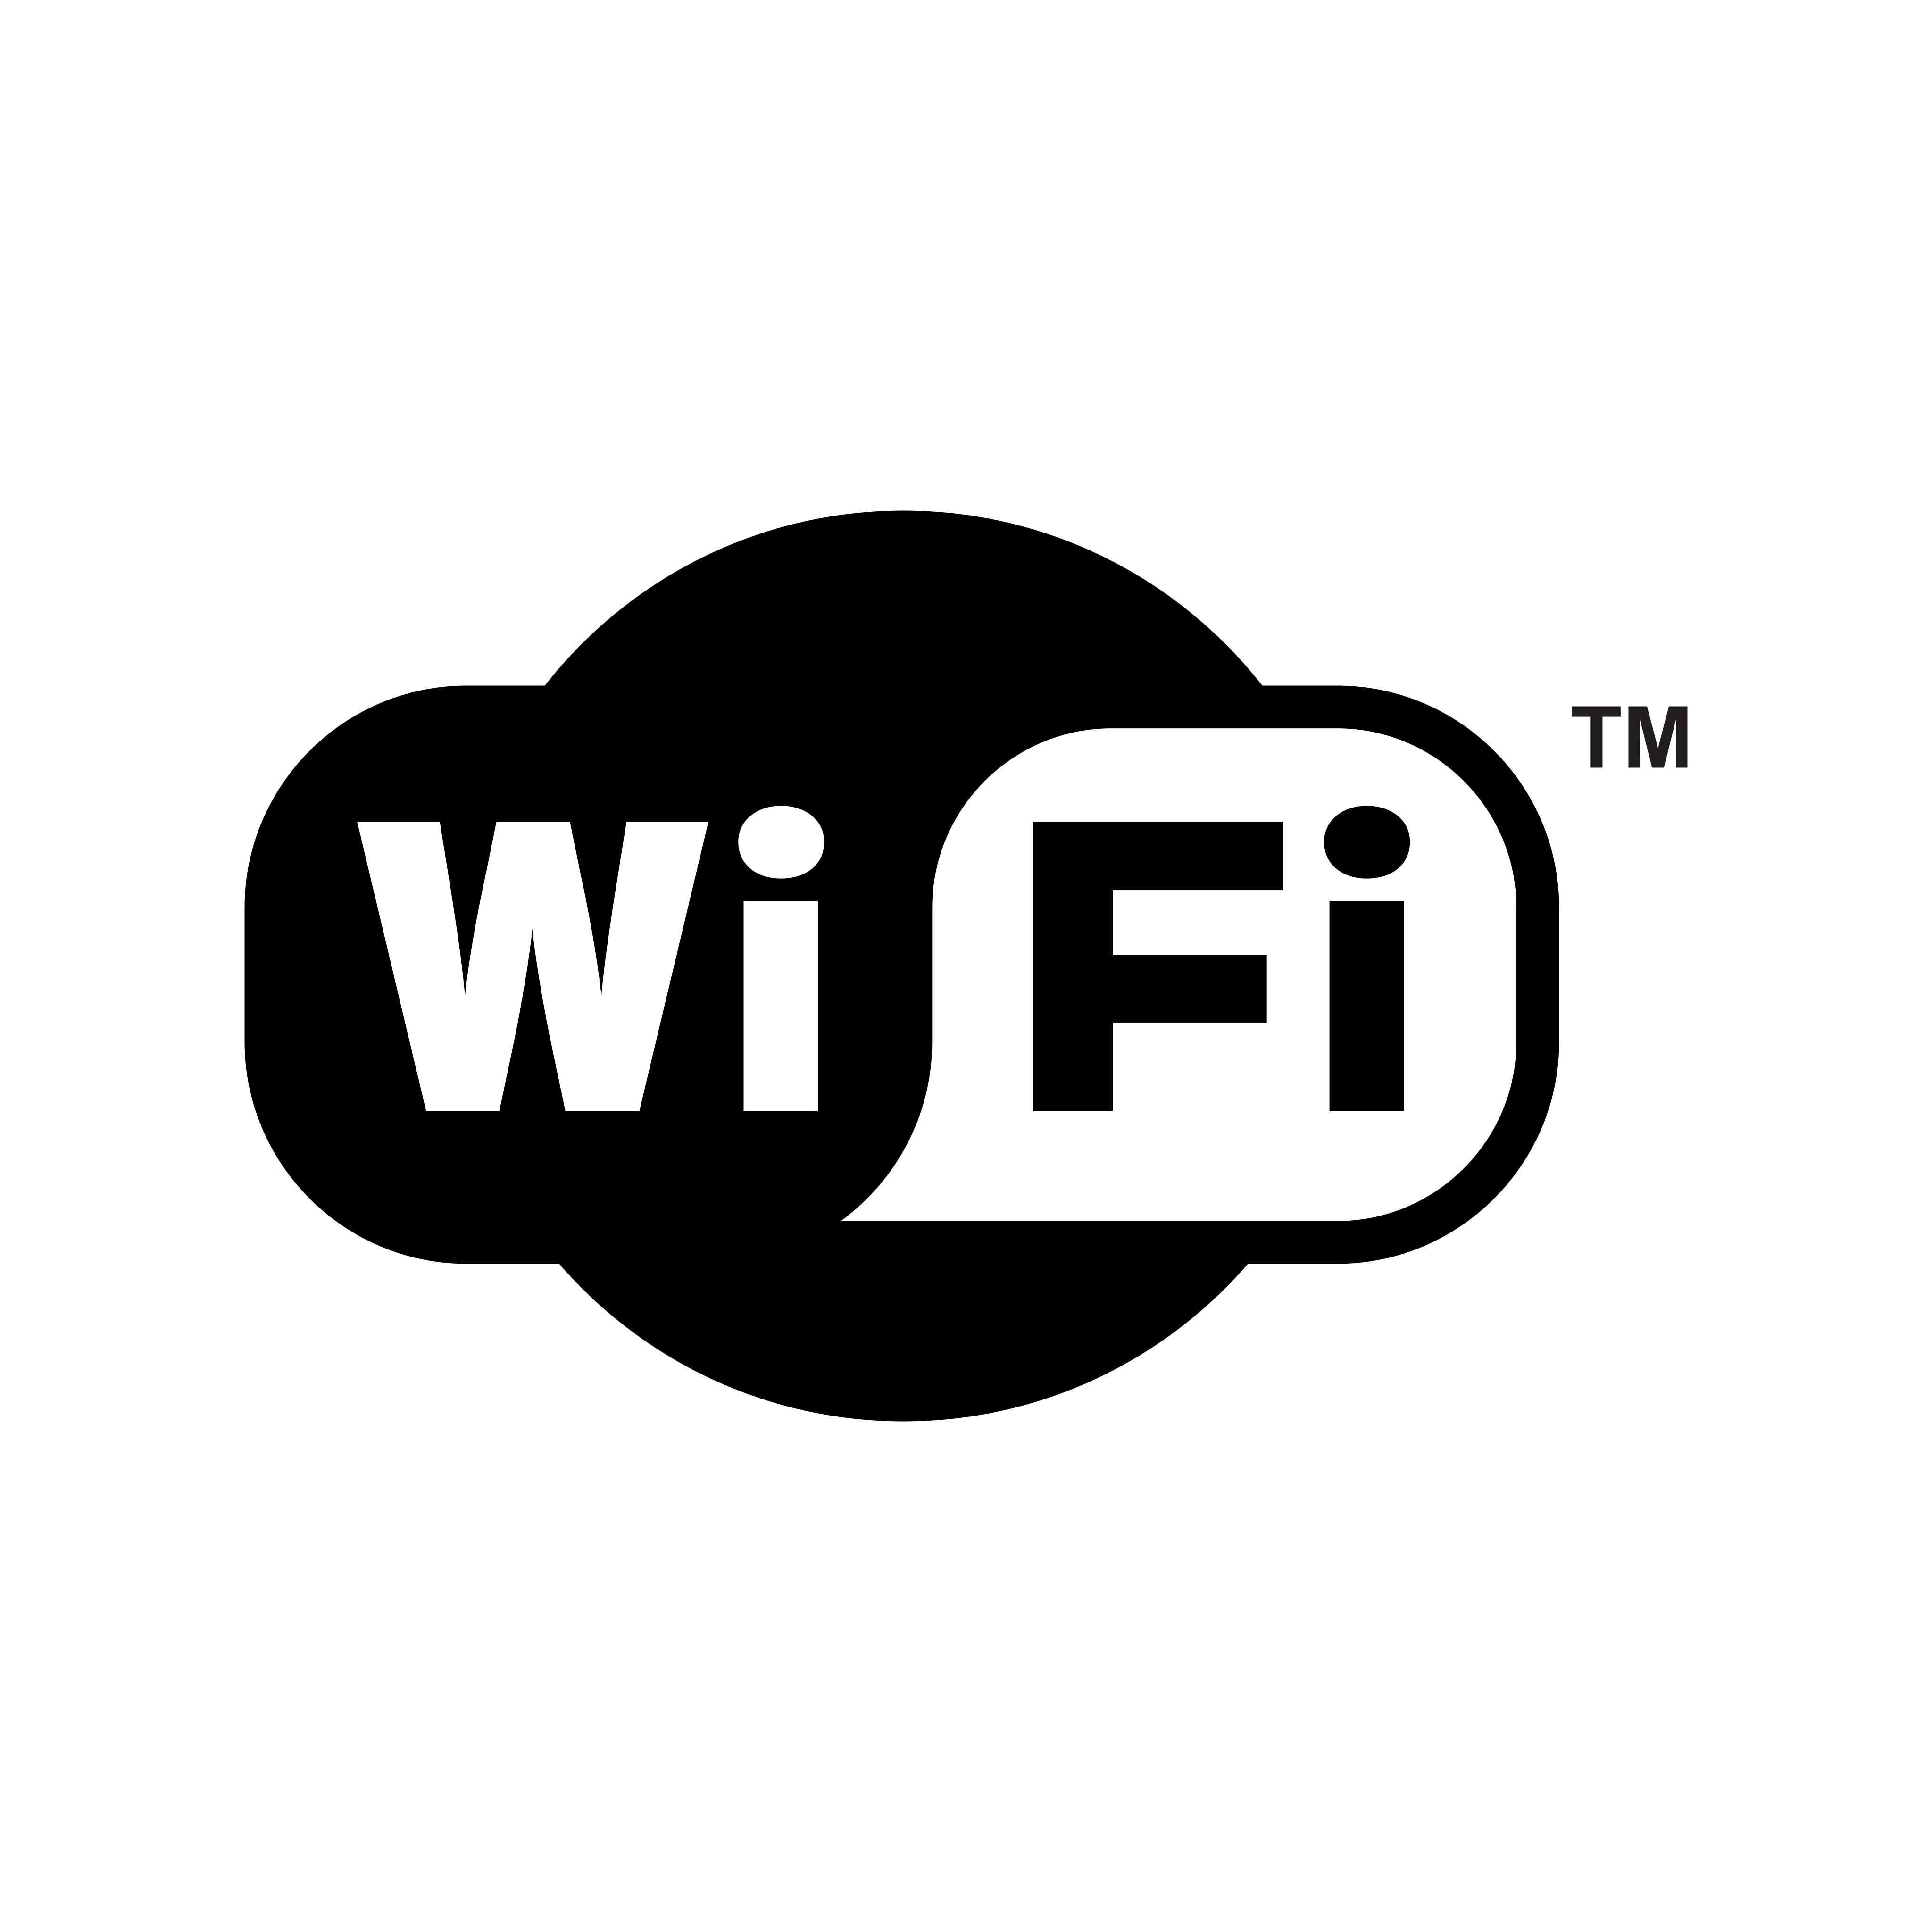 wi fi wireless logo 0 - Wi-fi Logo - Wireless Logo